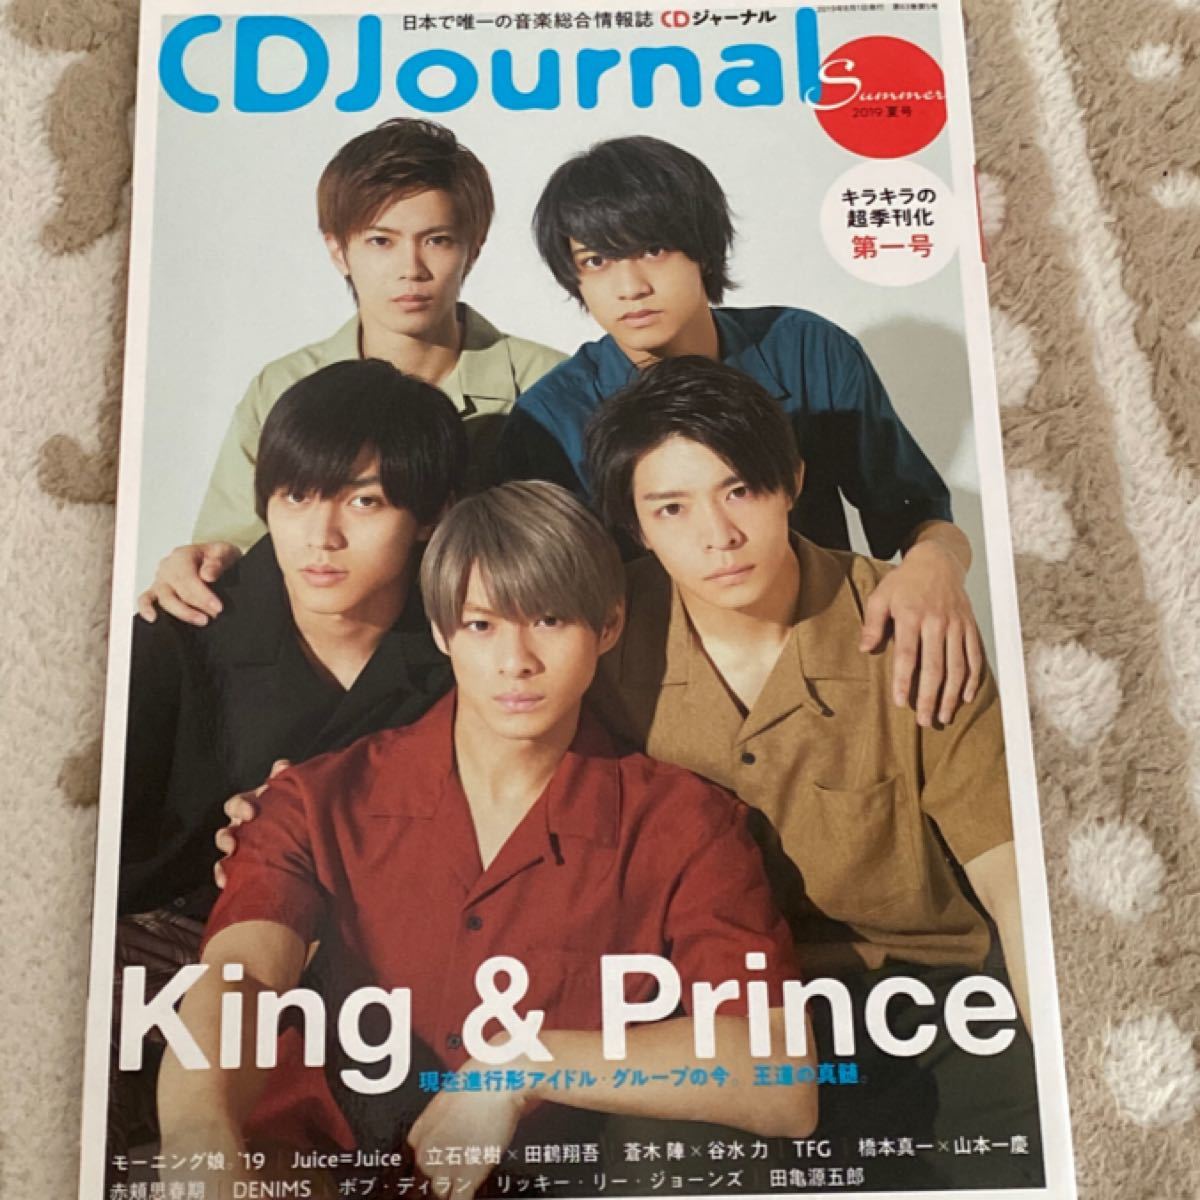 King & Prince CD Journal 2019夏号 CDジャーナル